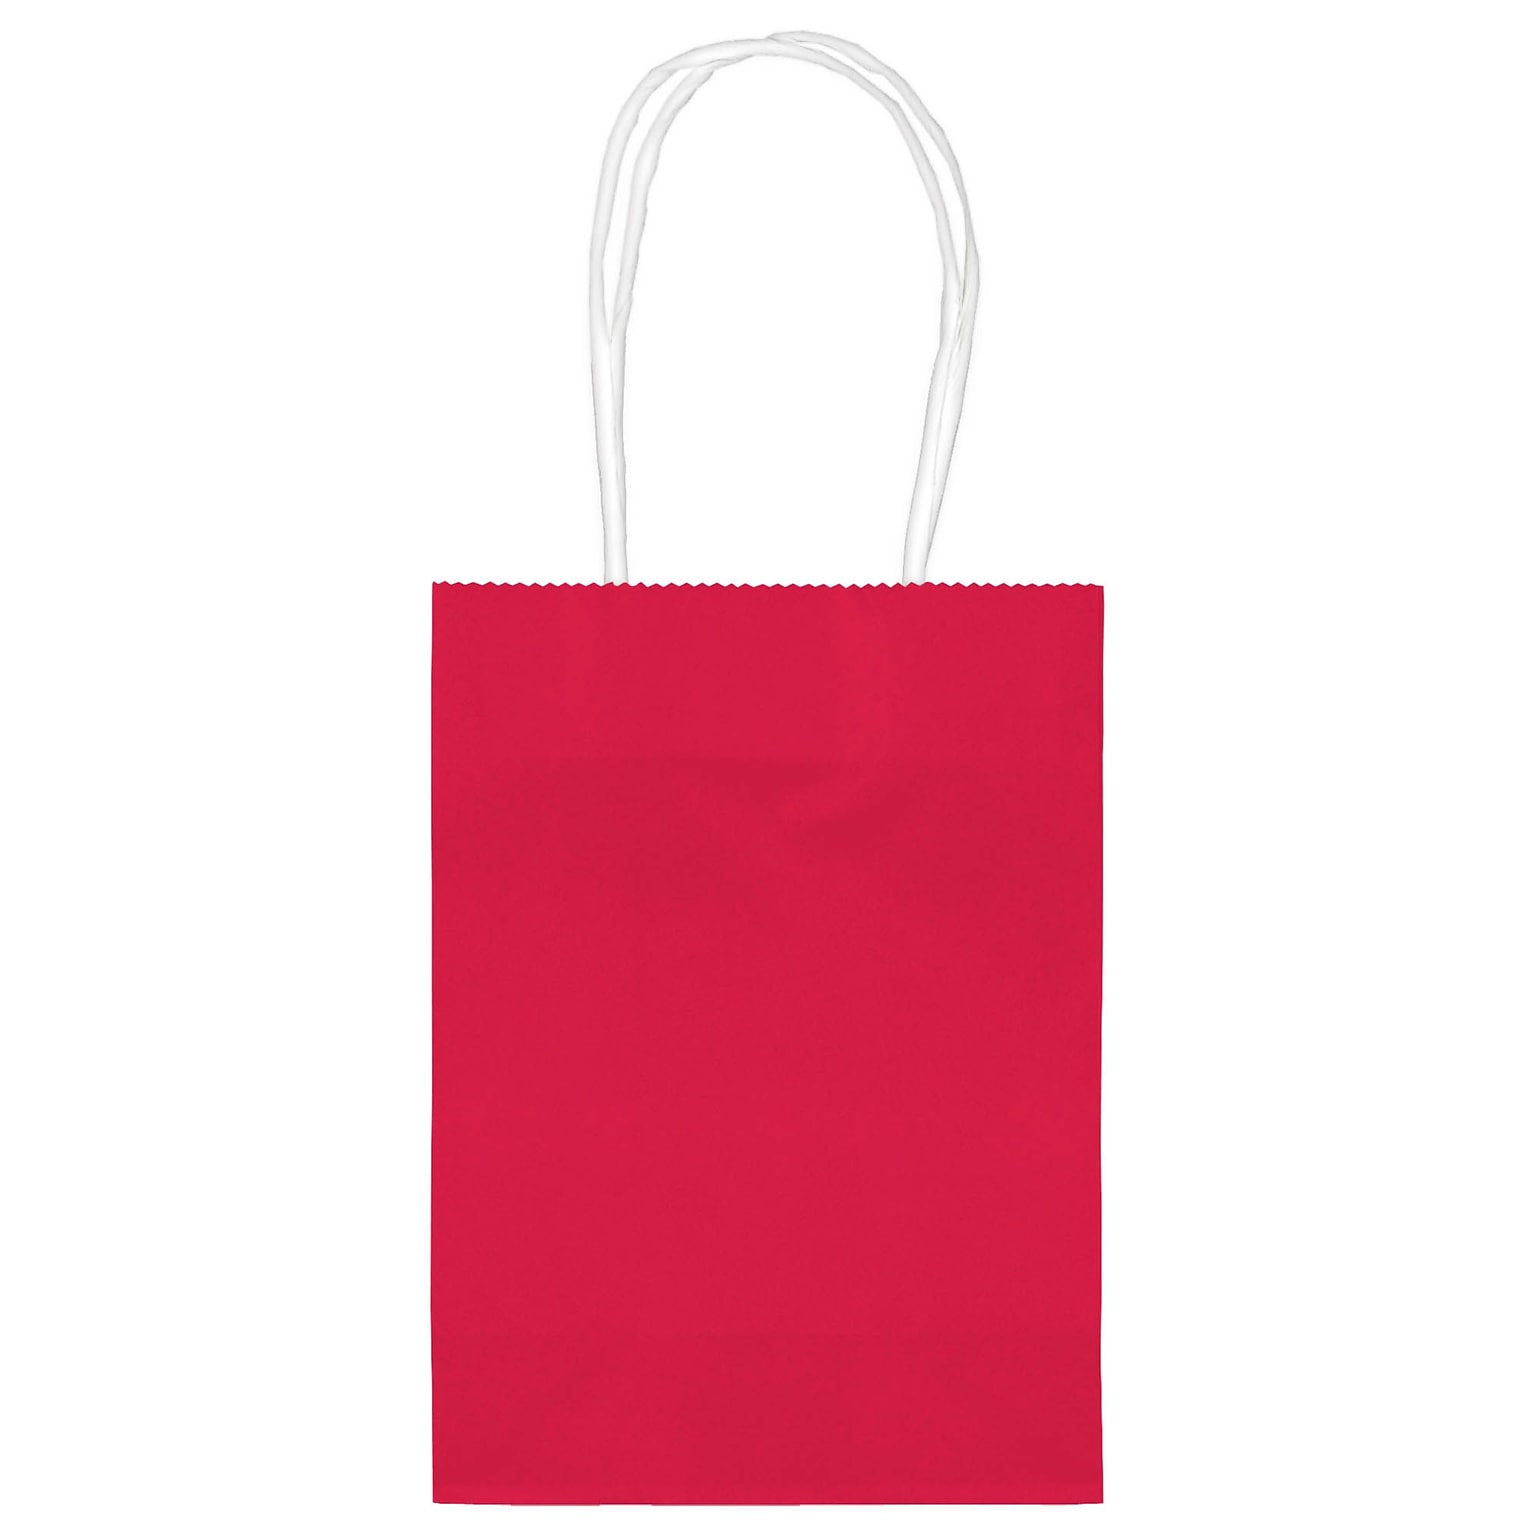 Amscan Kraft Paper Bag, Apple Red, 48 Bags/Pack (160059.4)